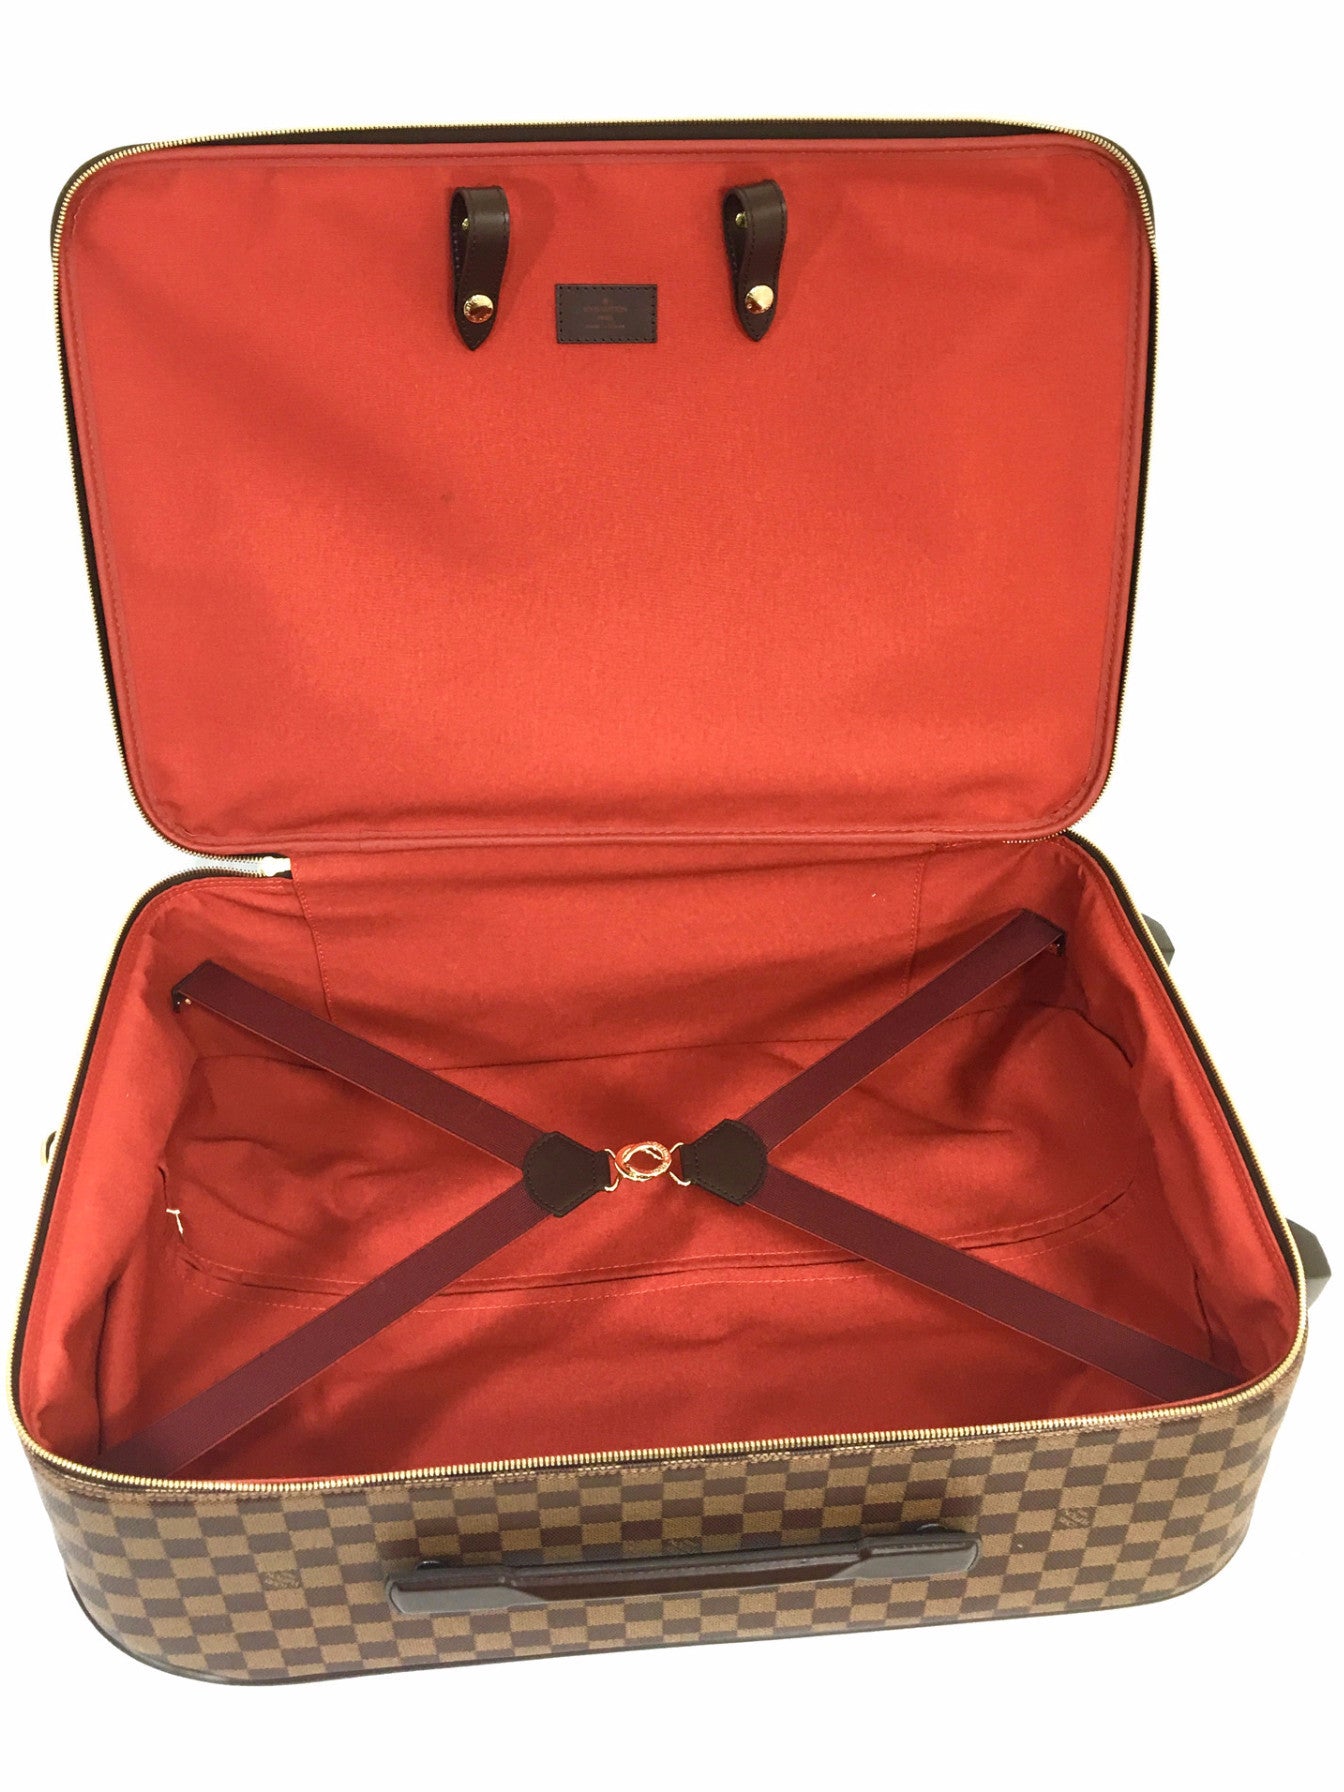 Louis Vuitton - Damier Ebene Pegase 55 Trolley suitcase - Catawiki